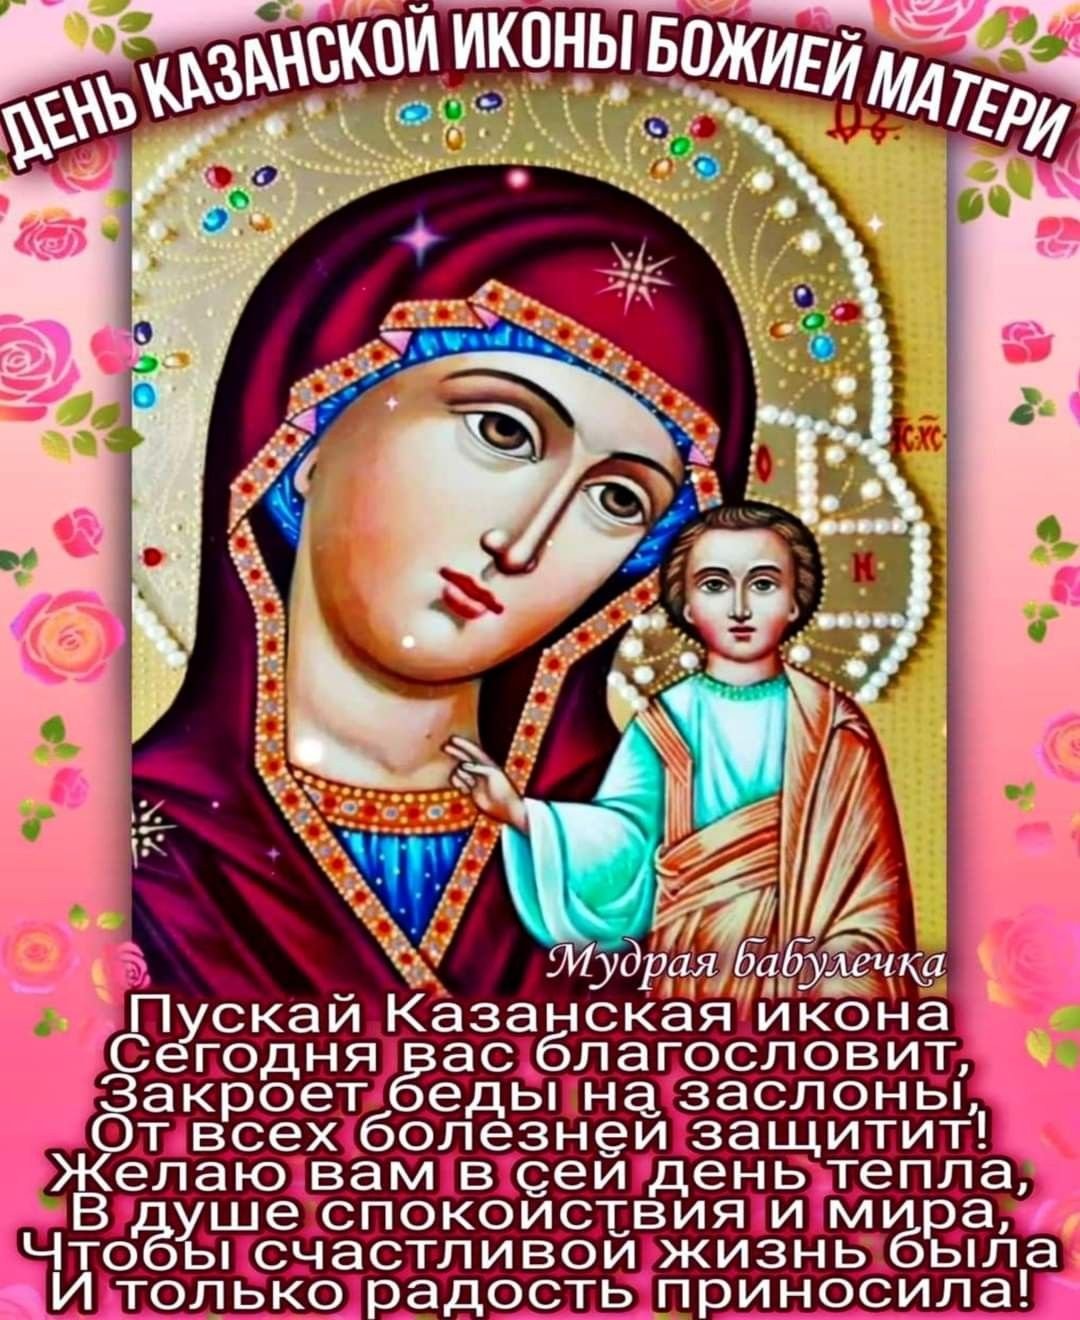 21 июля икона Казанской Божьей Матери: впечатляющие фотографии